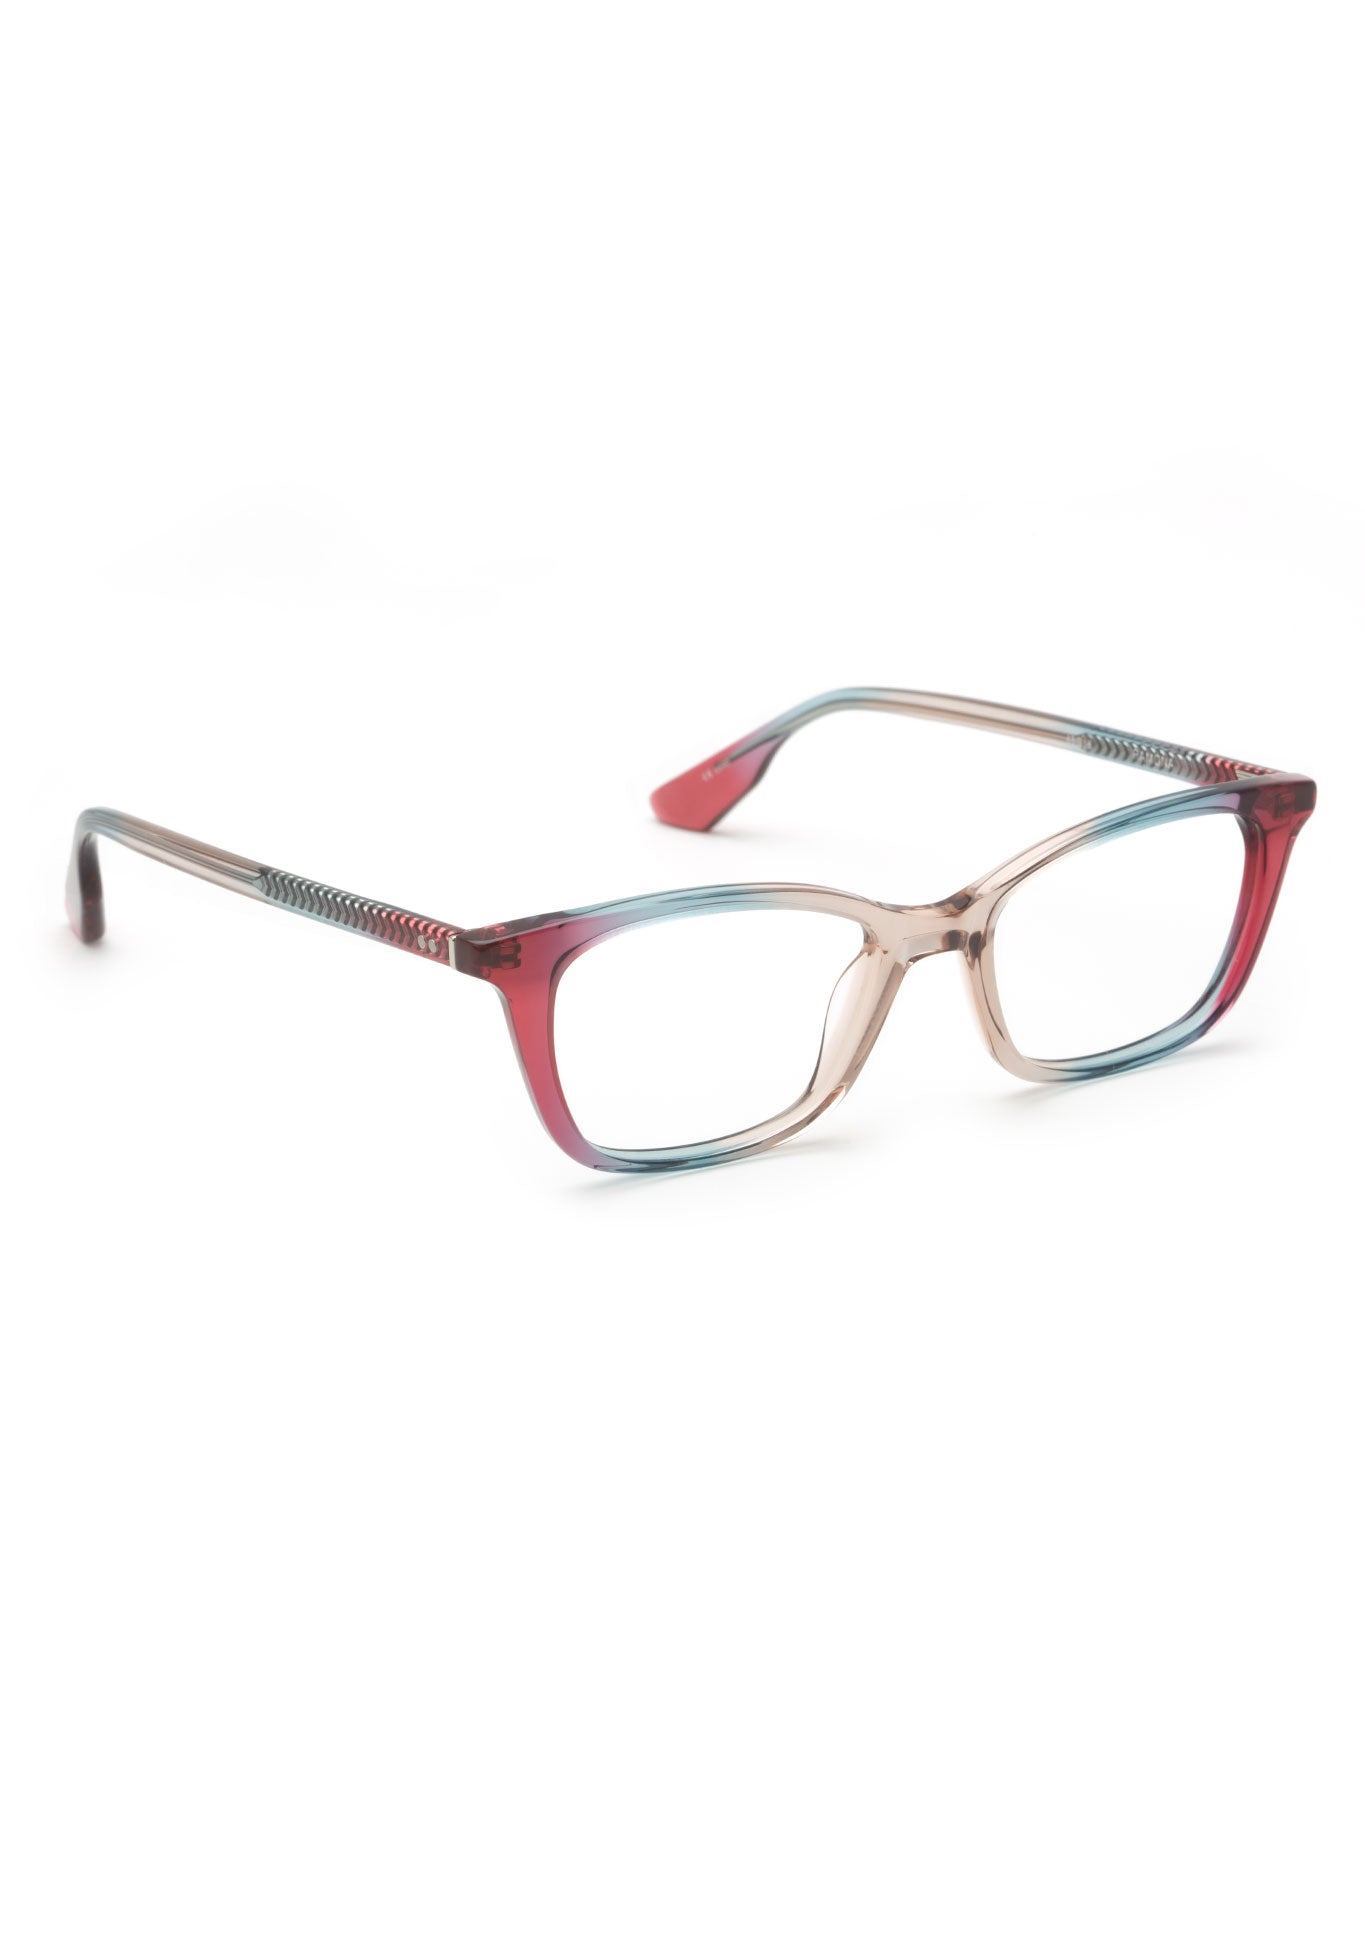 KREWE - RAMONA | Sorbetto Handcrafted, Luxury Multicolored Acetate Eyeglasses